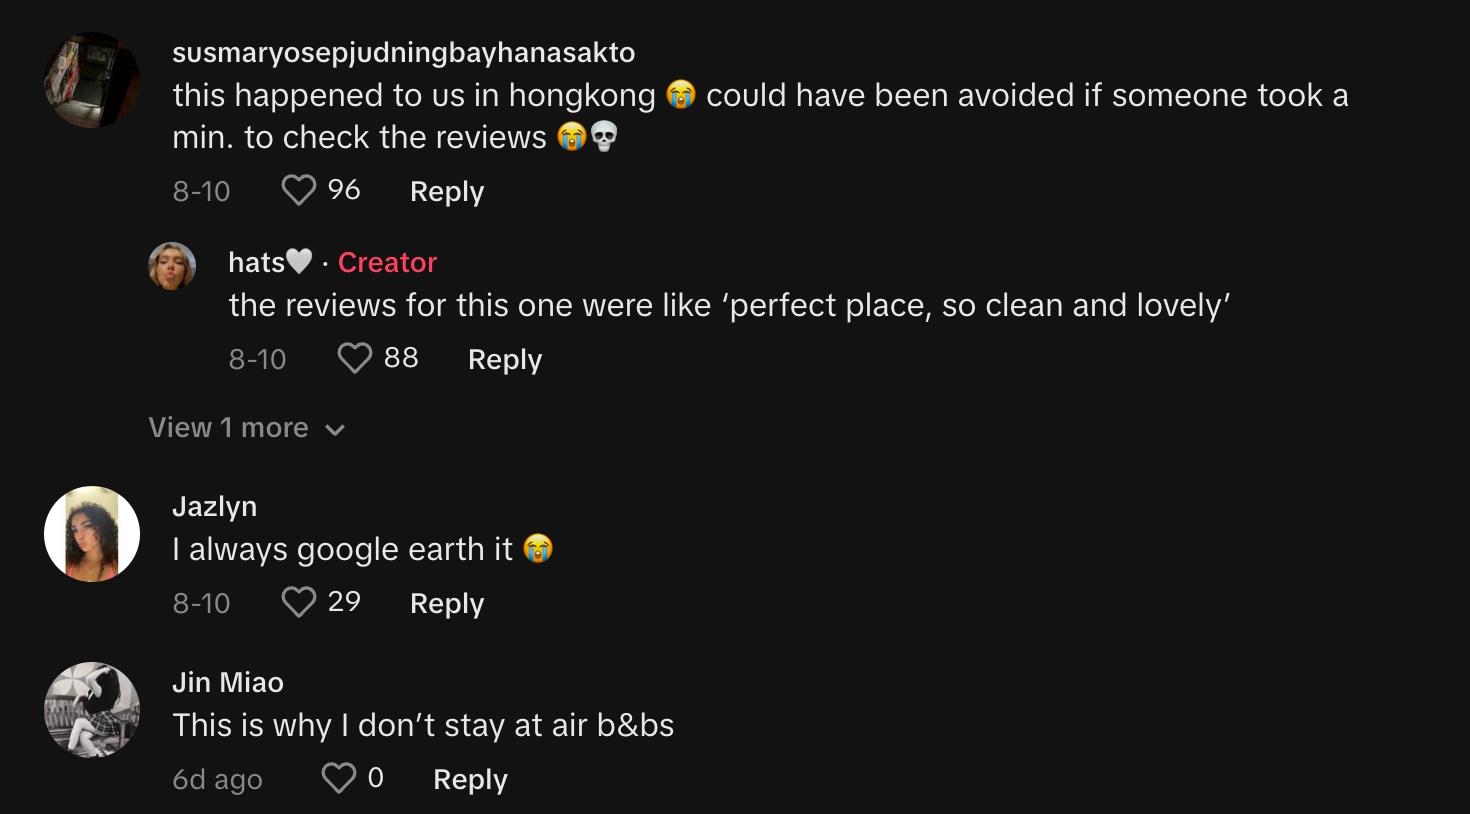 评论者分享了与 Airbnb 类似的经历